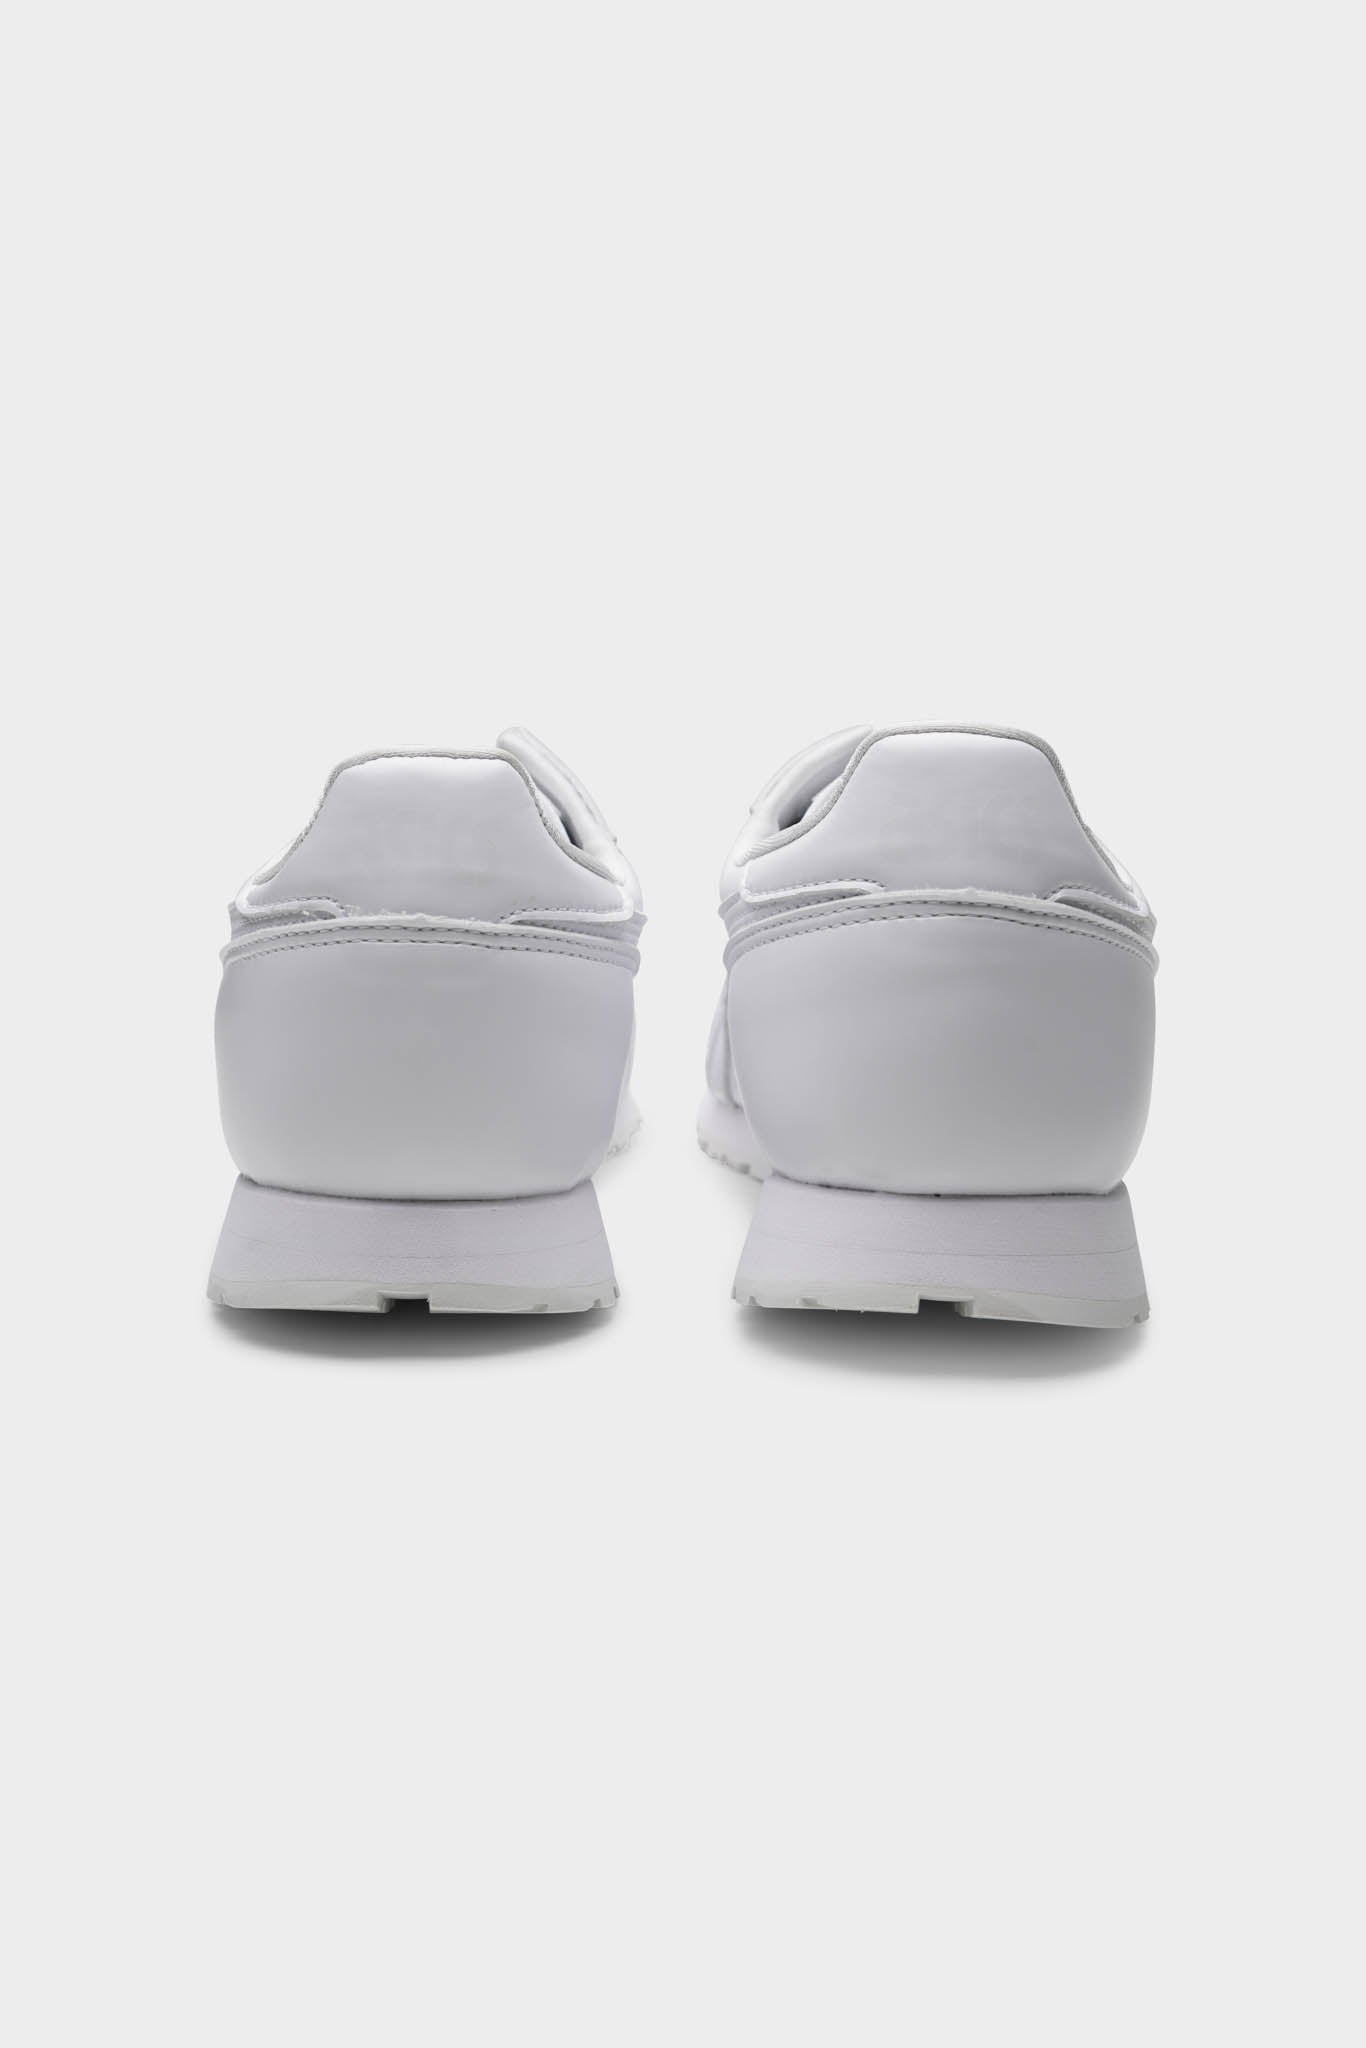 Selectshop FRAME - COMME DES GARÇONS SHIRT CDG Shirt x Asics OC Runner Footwear Dubai